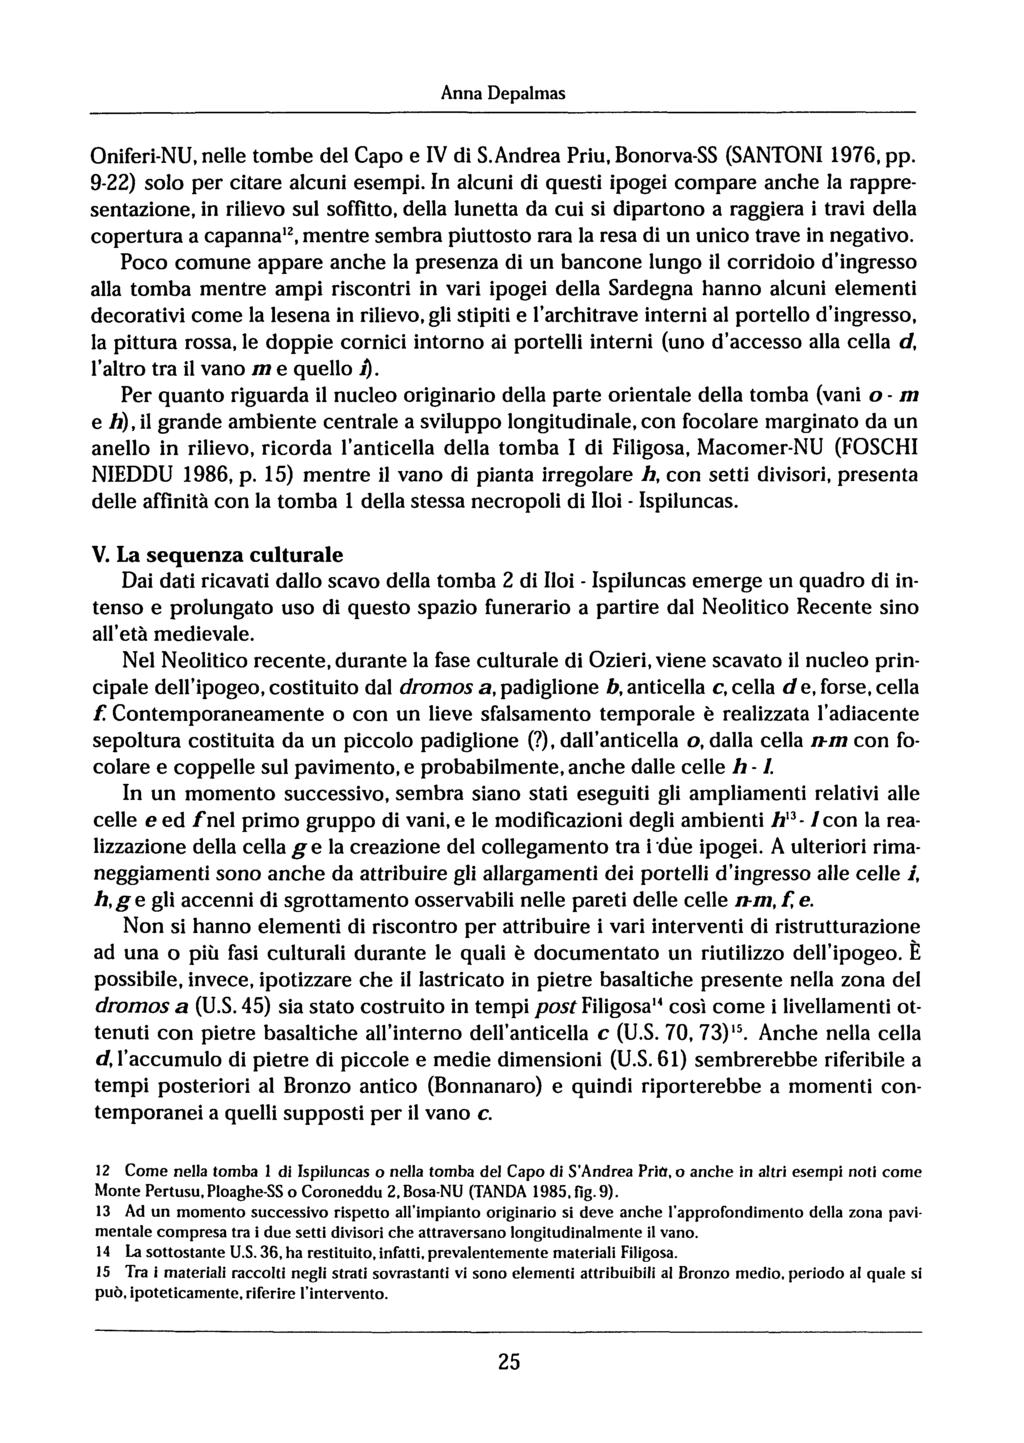 Anna Depalmas Oniferi-NU, nelle tombe del Capo e IV di S.Andrea Priu, Bonorva-SS (SANTONI 1976, pp. 9-22) solo per citare alcuni esempi.